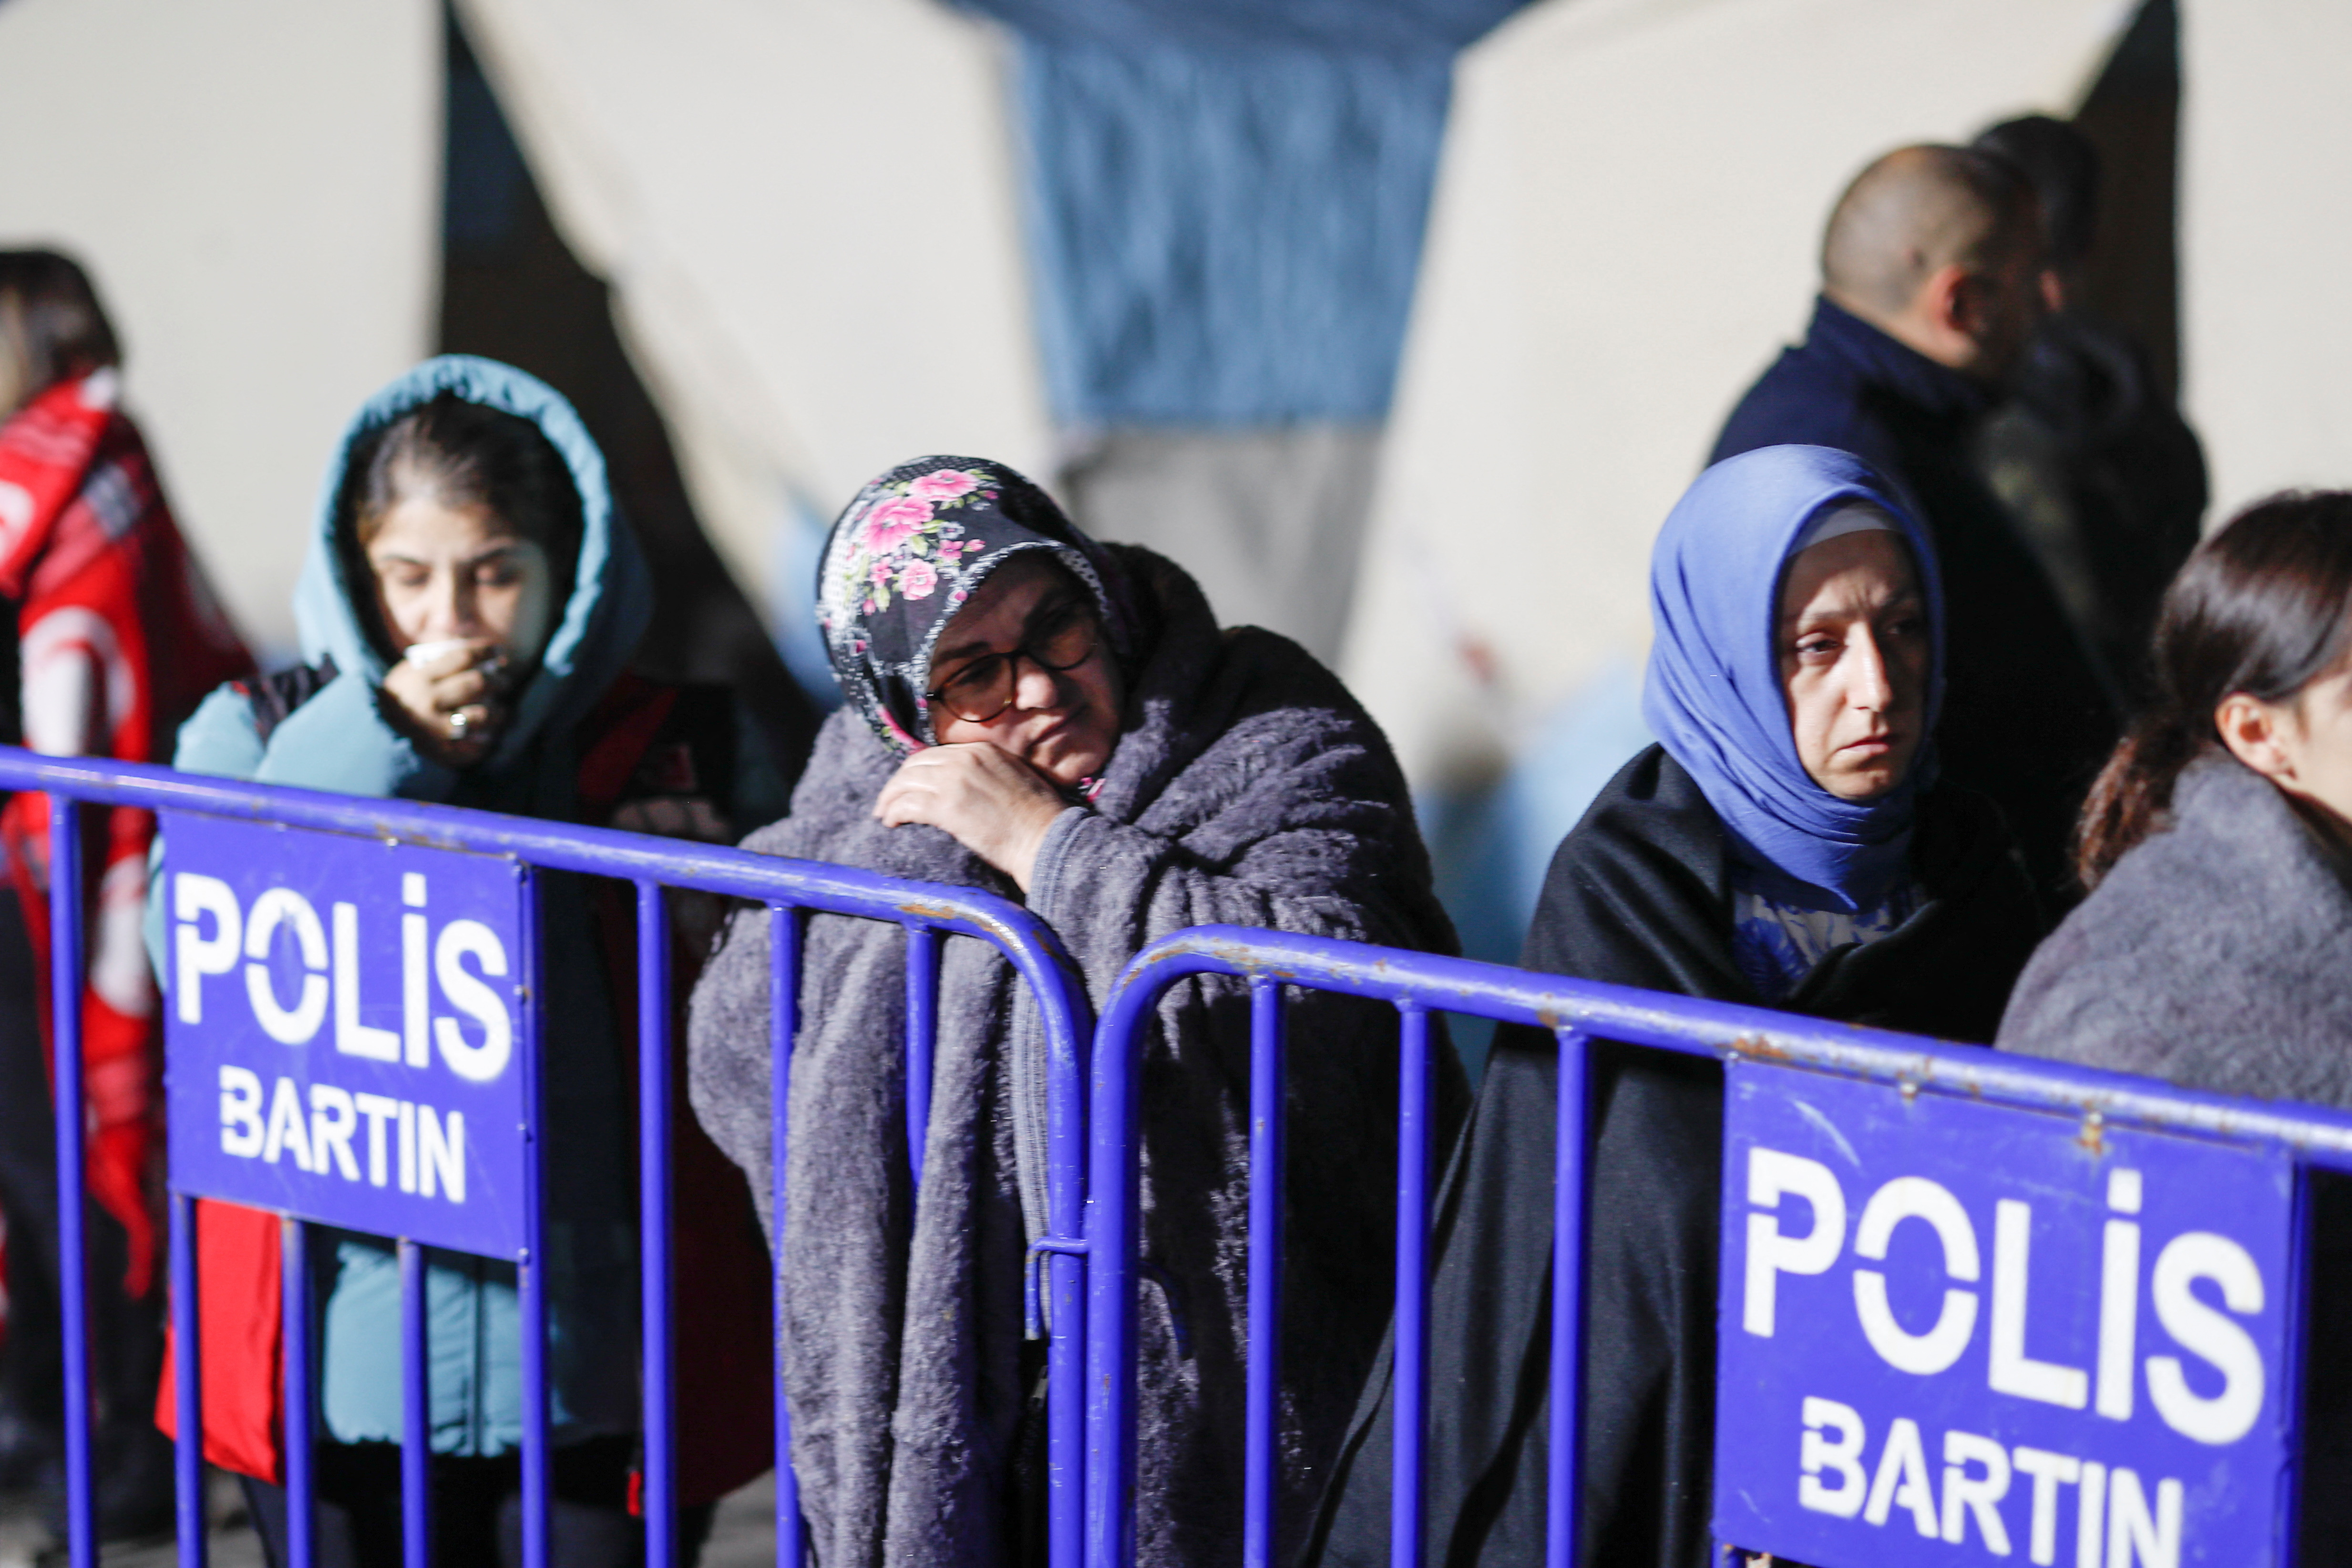 أقارب وأصدقاء عمال المنجم ينتظرون خارجه بعد الانفجار في أماسرا، في مقاطعة بارتين، تركيا، 15 أكتوبر/تشرين الأول 2022.